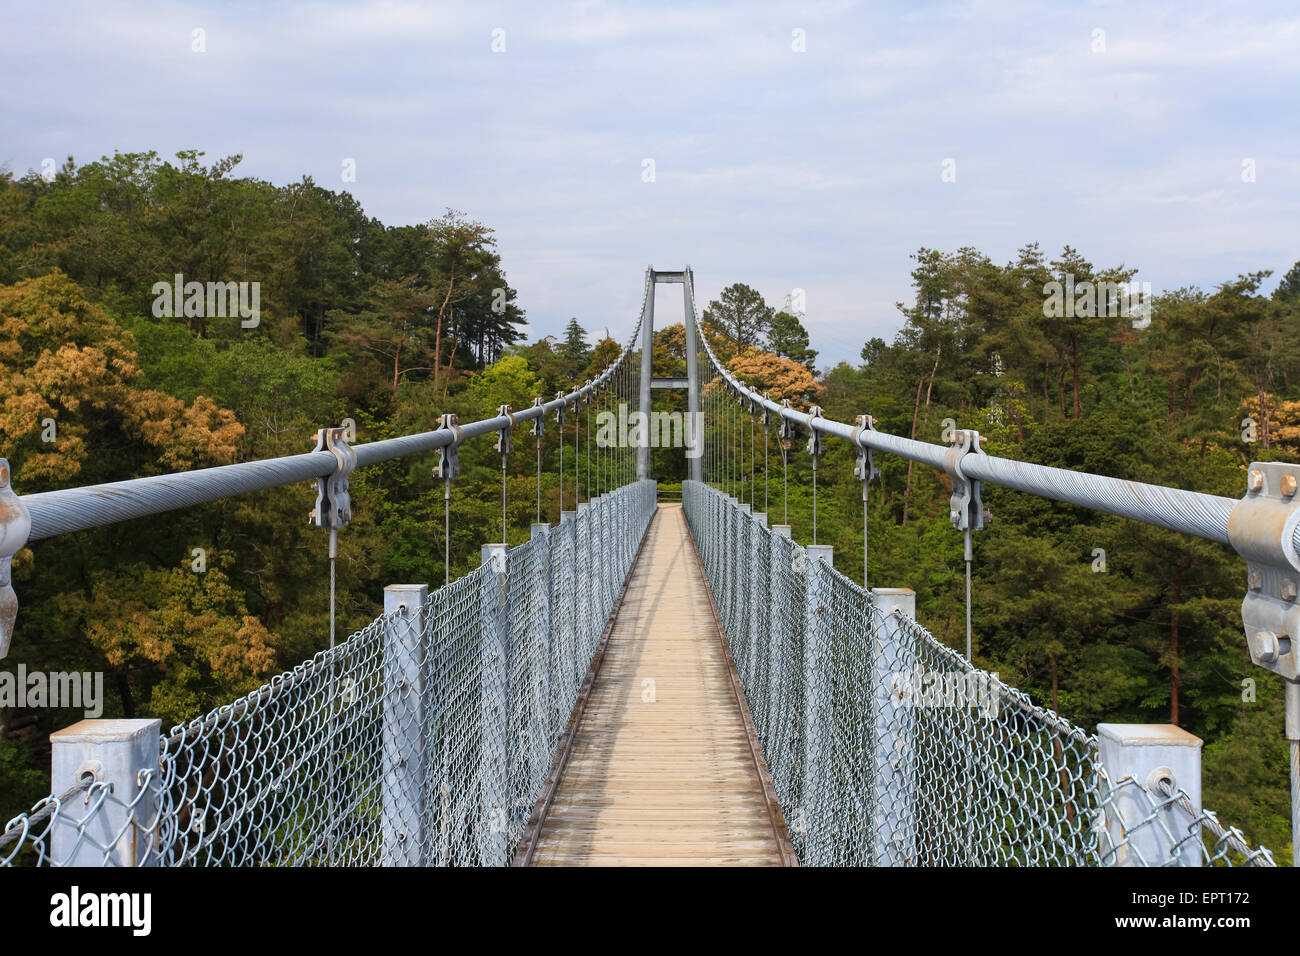 Suspension bridge over nature scene Stock Photo